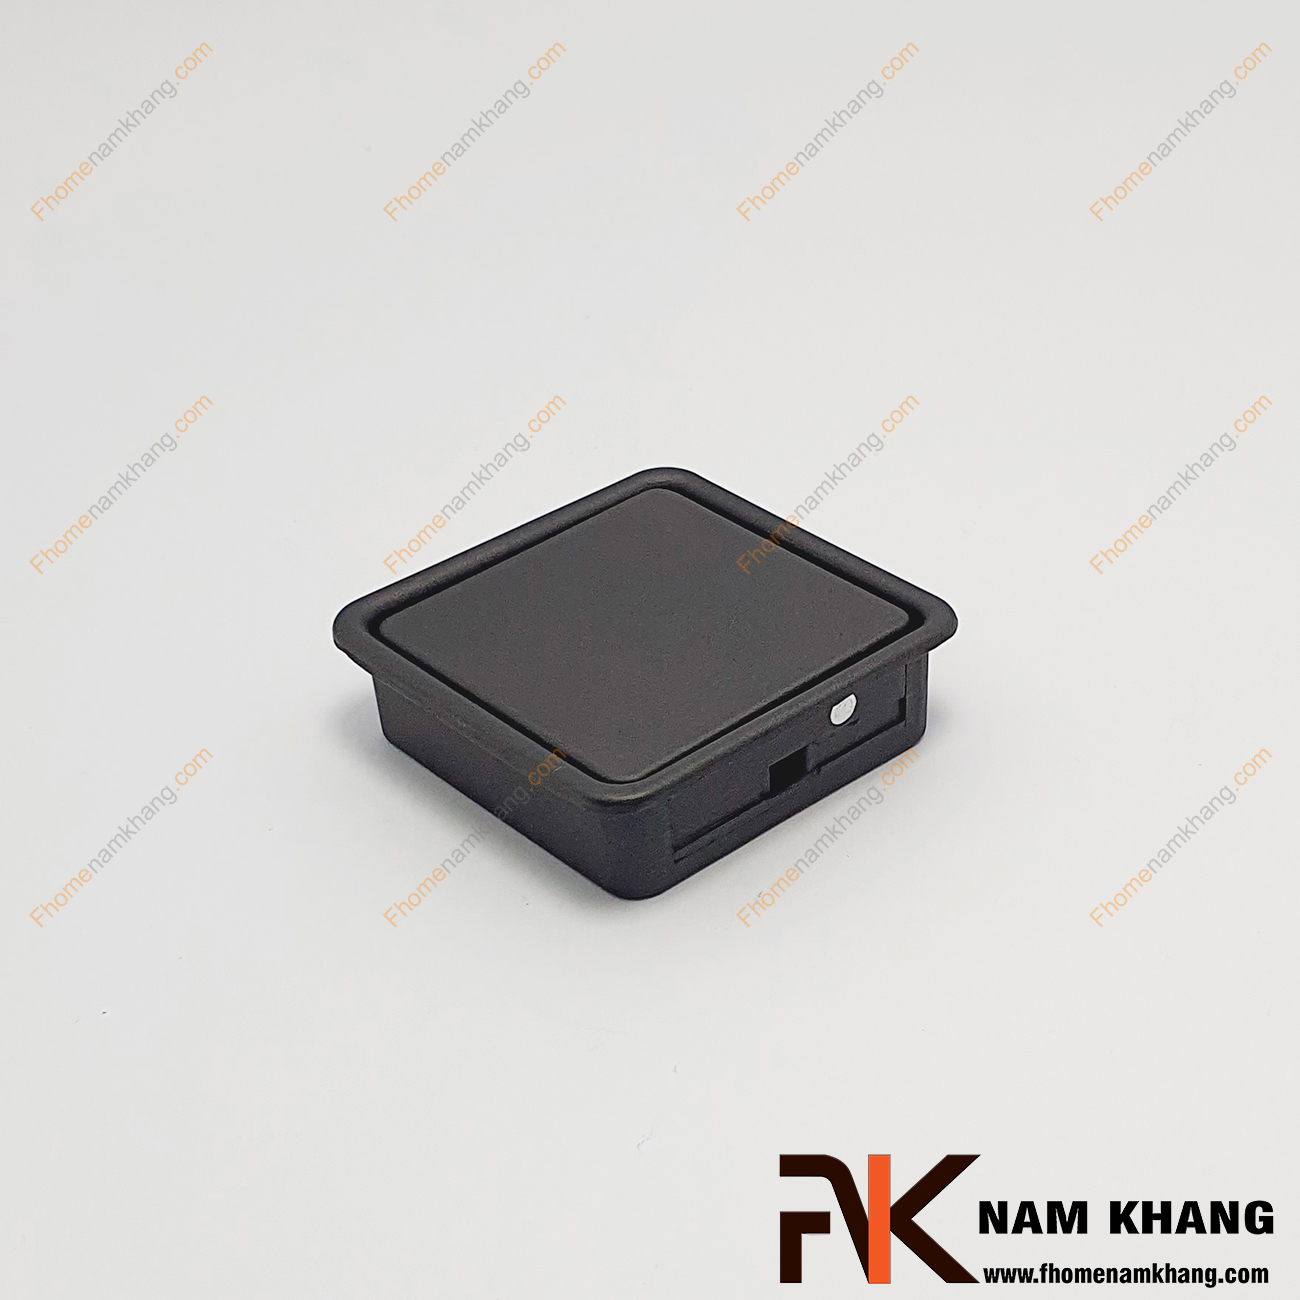 Núm âm tủ dạng vuông trơn màu đen mờ NK237-DM chuyên dùng cho các loại tủ đặt ở những nơi có không gian hạn chế hoặc dùng để nâng cao tính thẫm mỹ của sản phẩm.